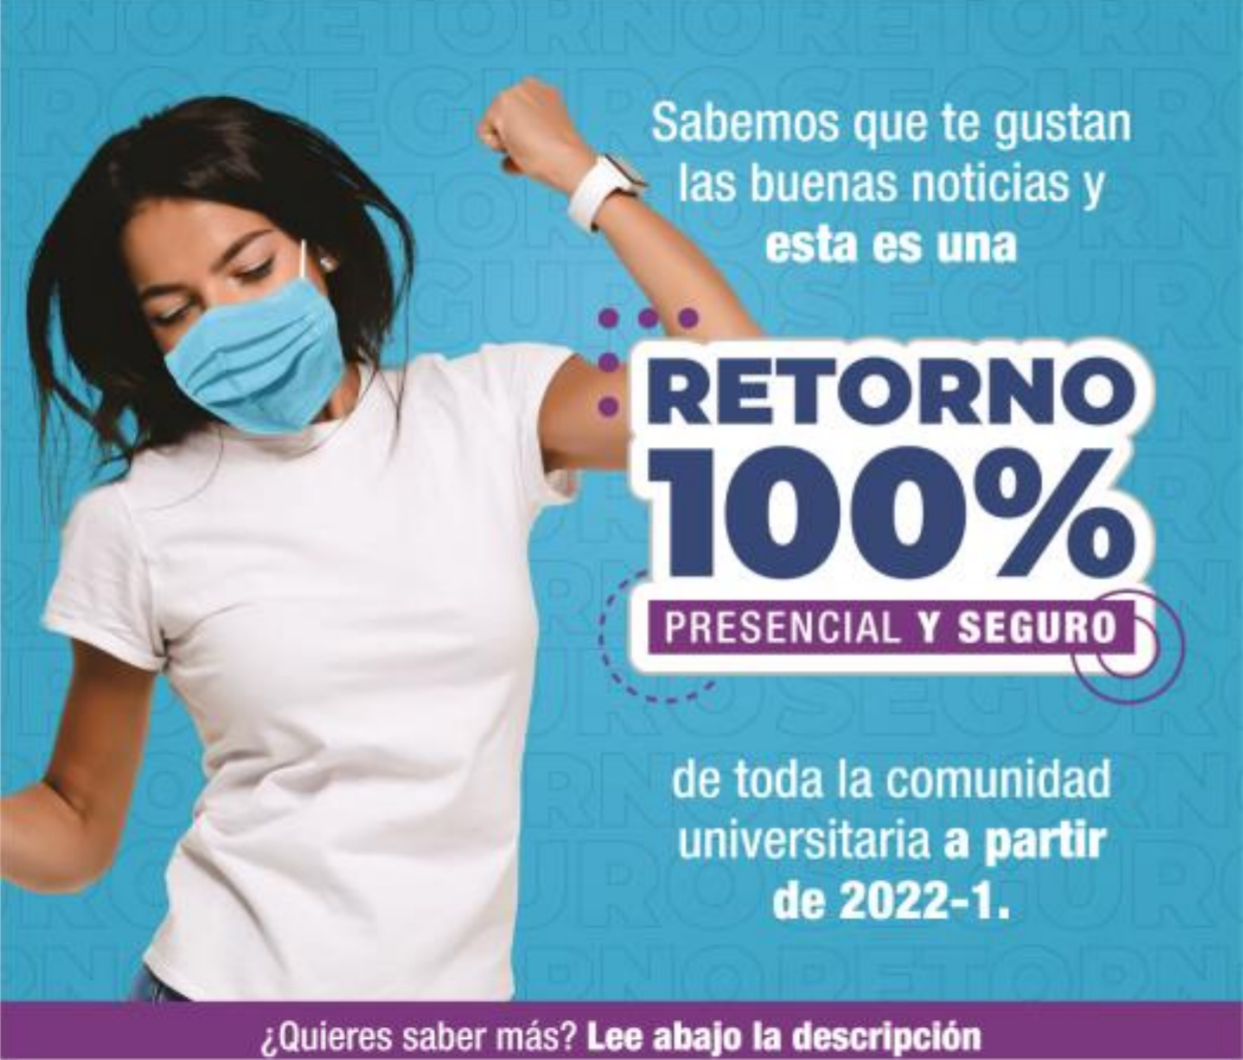 LA UNIVERSIDAD COOPERATIVA DE COLOMBIA ANUNCIA RETORNO SEGURO CON PRESENCIALIDAD AL 100%, A PARTIR DE FEBRERO DE 2022.